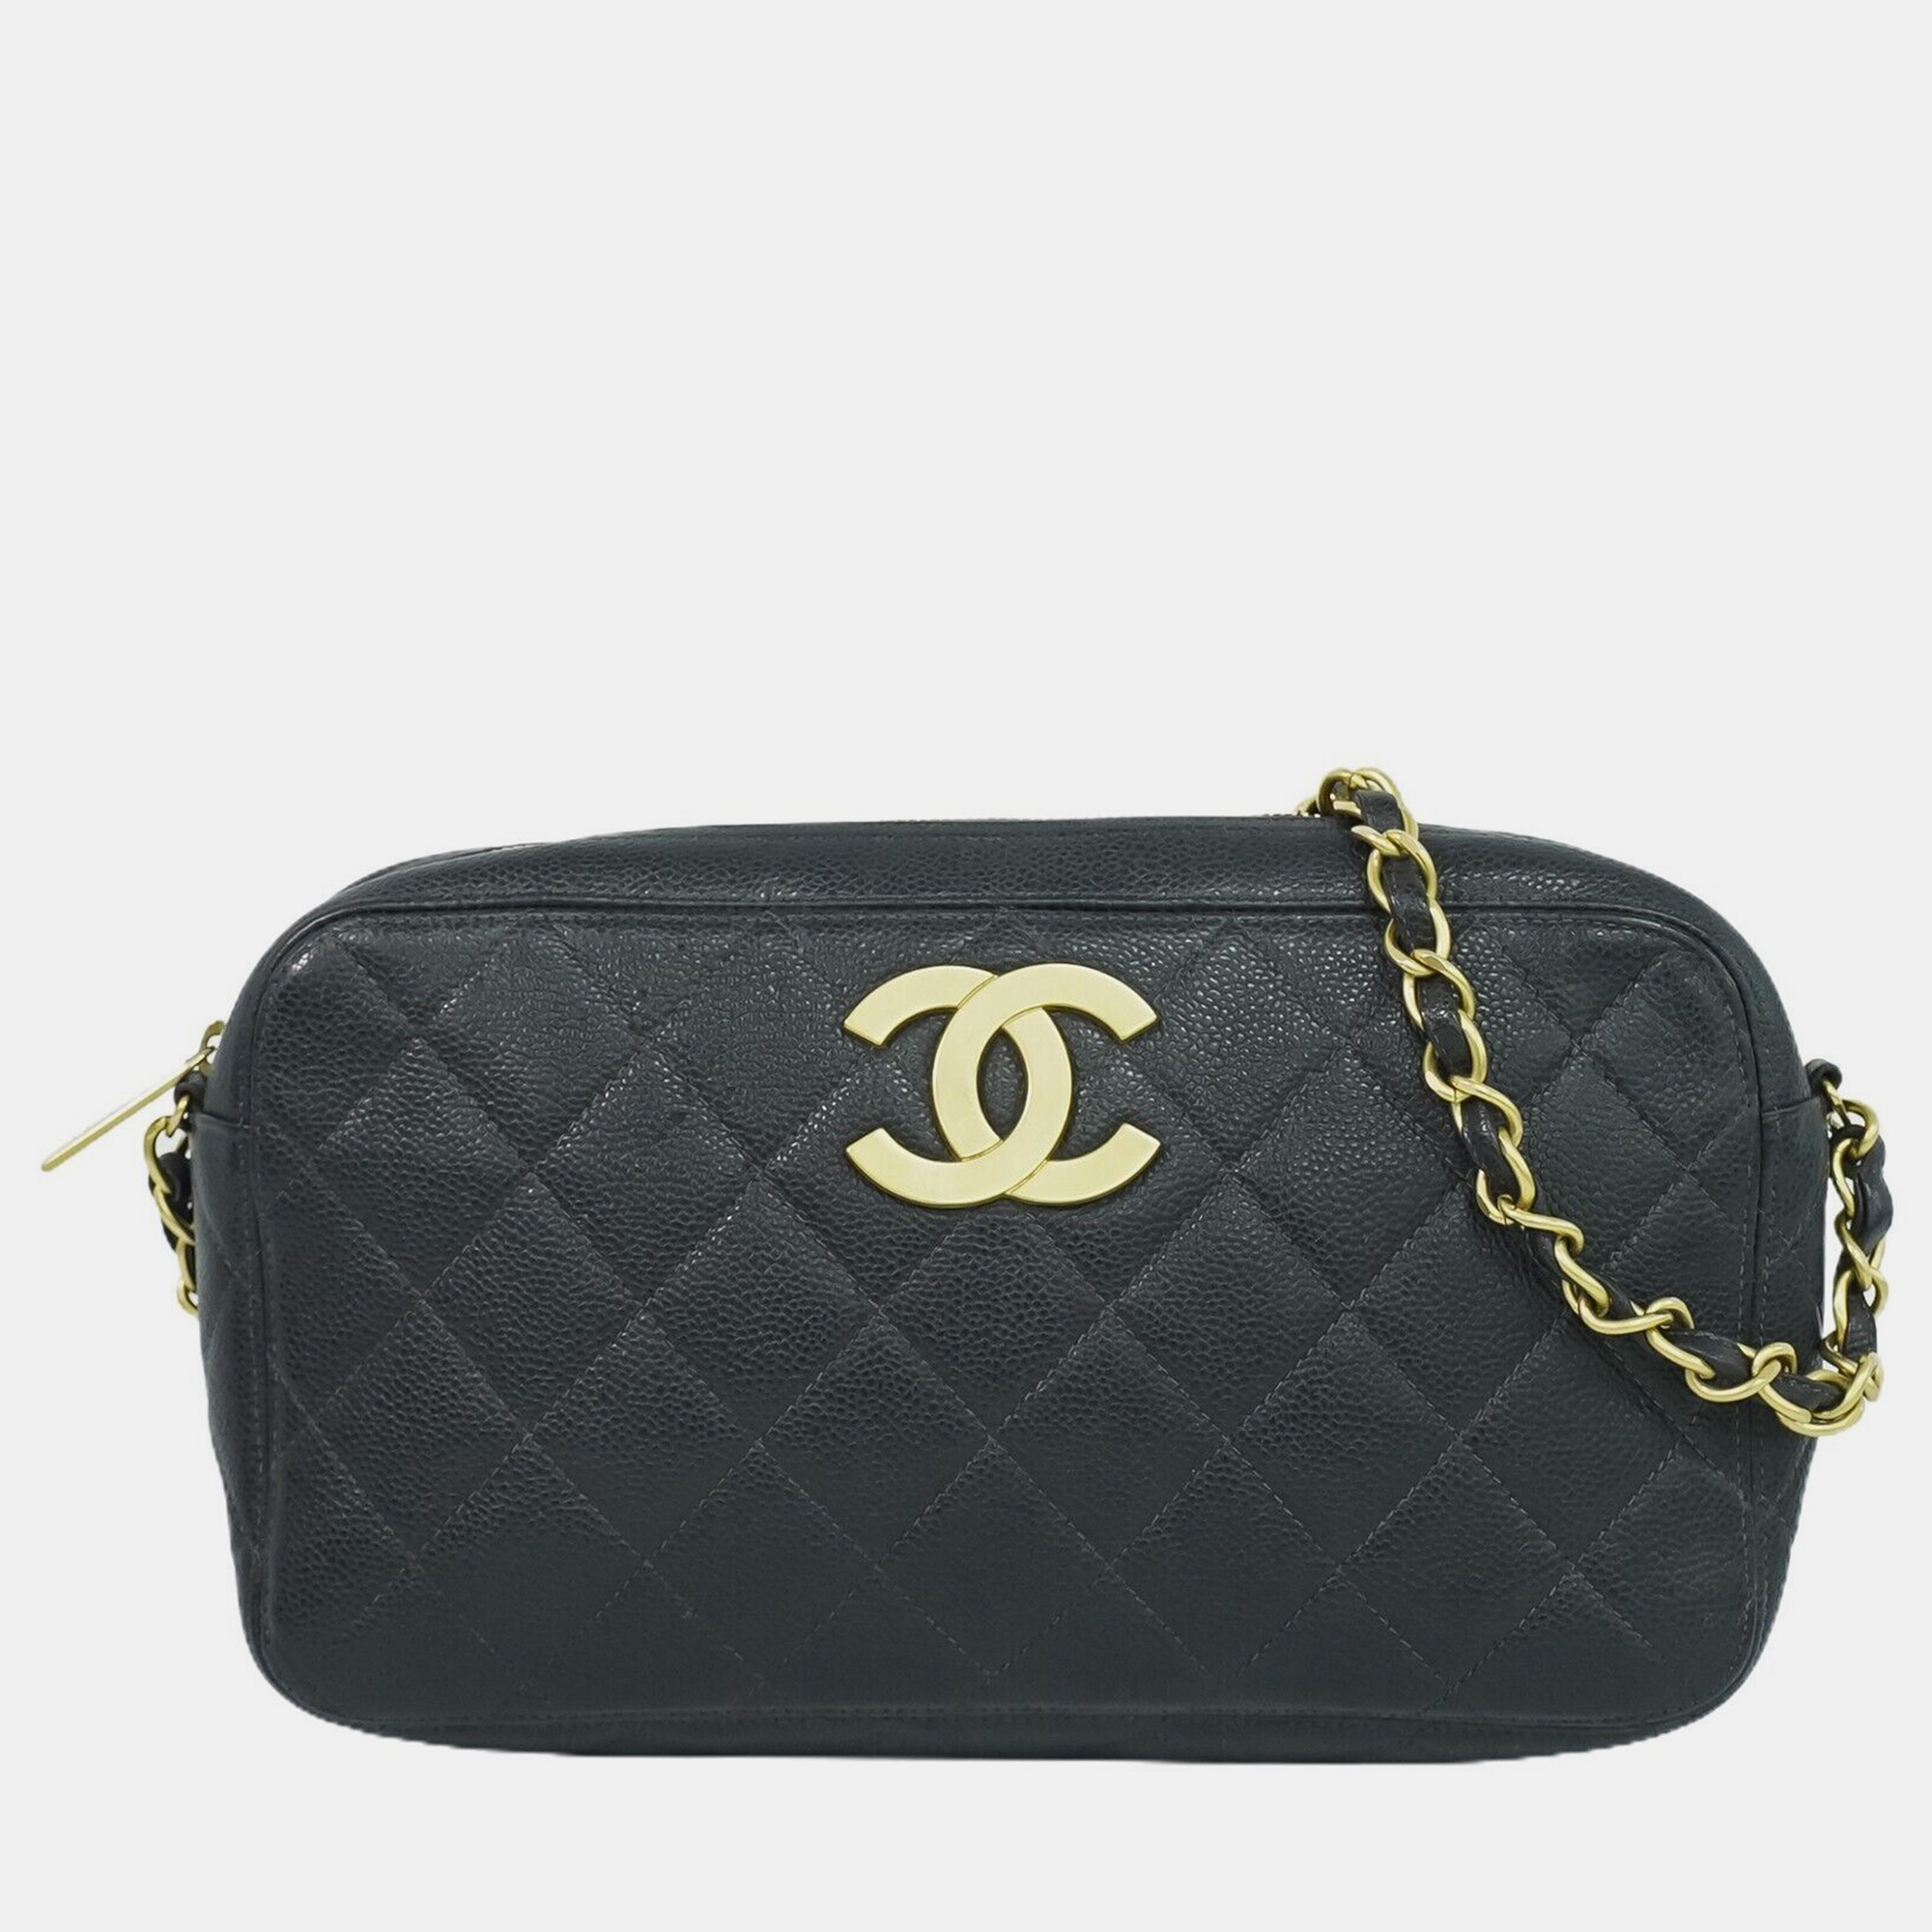 Chanel black leather cc camera shoulder bag